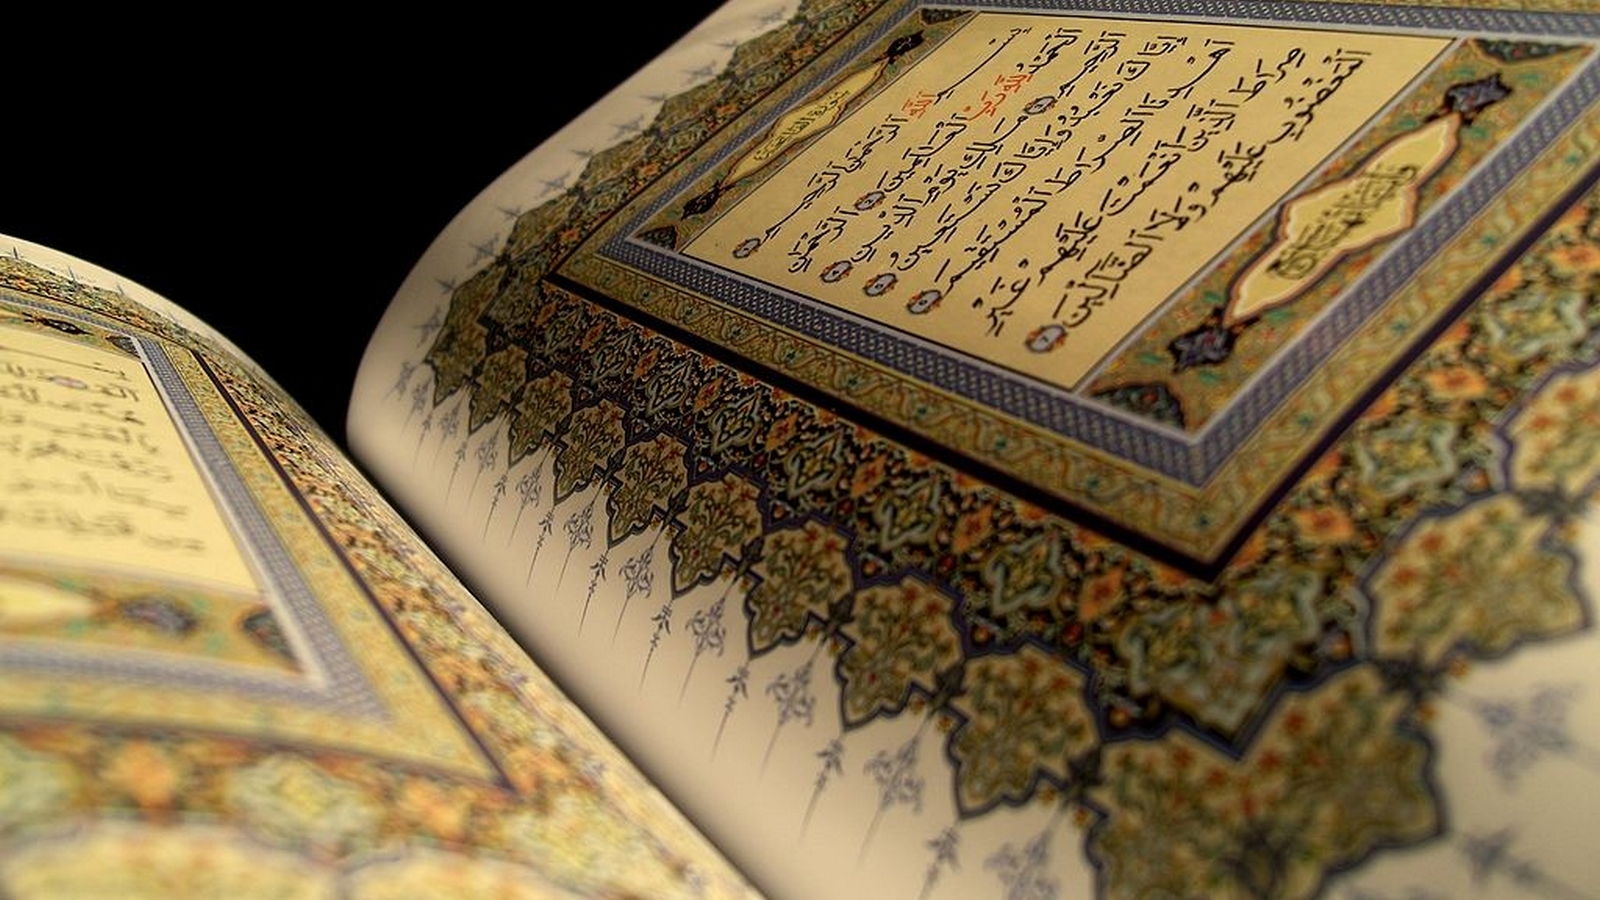 AL-Qur'an - Tentang Tata Ruang dan Kelestarian Lingkungan | Bappeda Litbang  Kota Banjarmasin